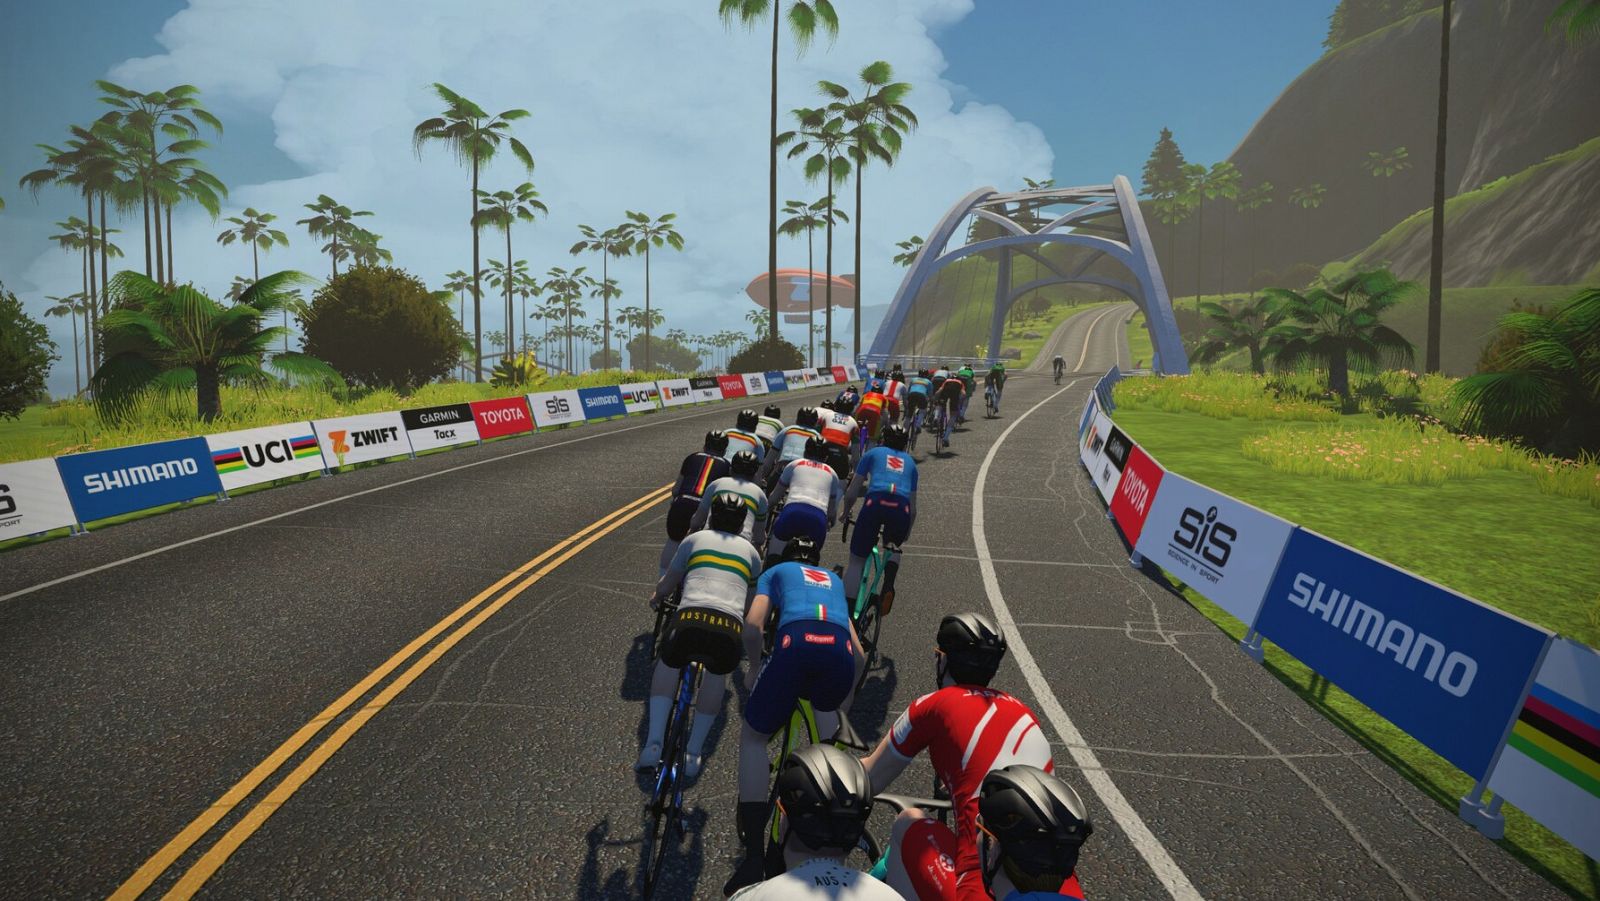 Sigue los Mundiales de ciclismo virtual en +tdp